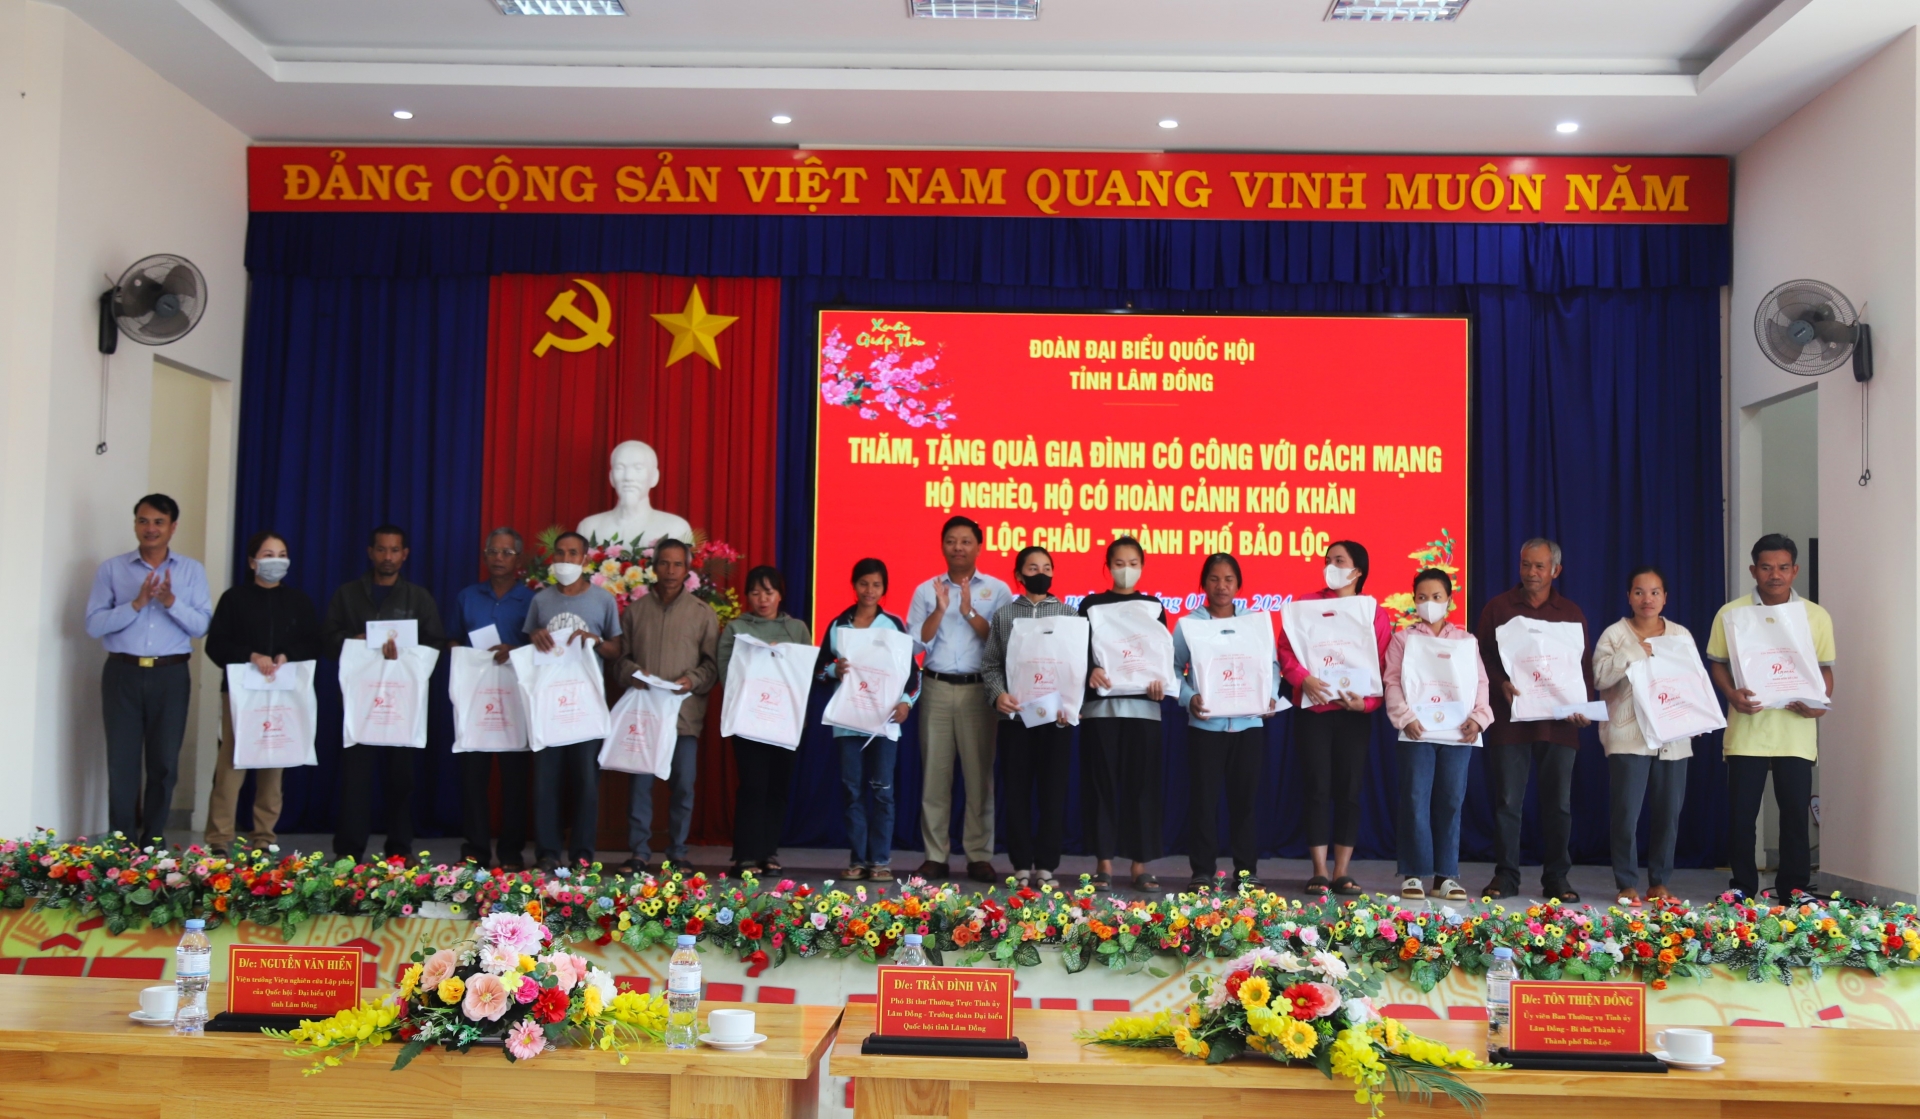 Các đại biểu trao tặng quà Tết cho hộ nghèo, bà con đồng bào dân tộc thiểu số xã Lộc Châu